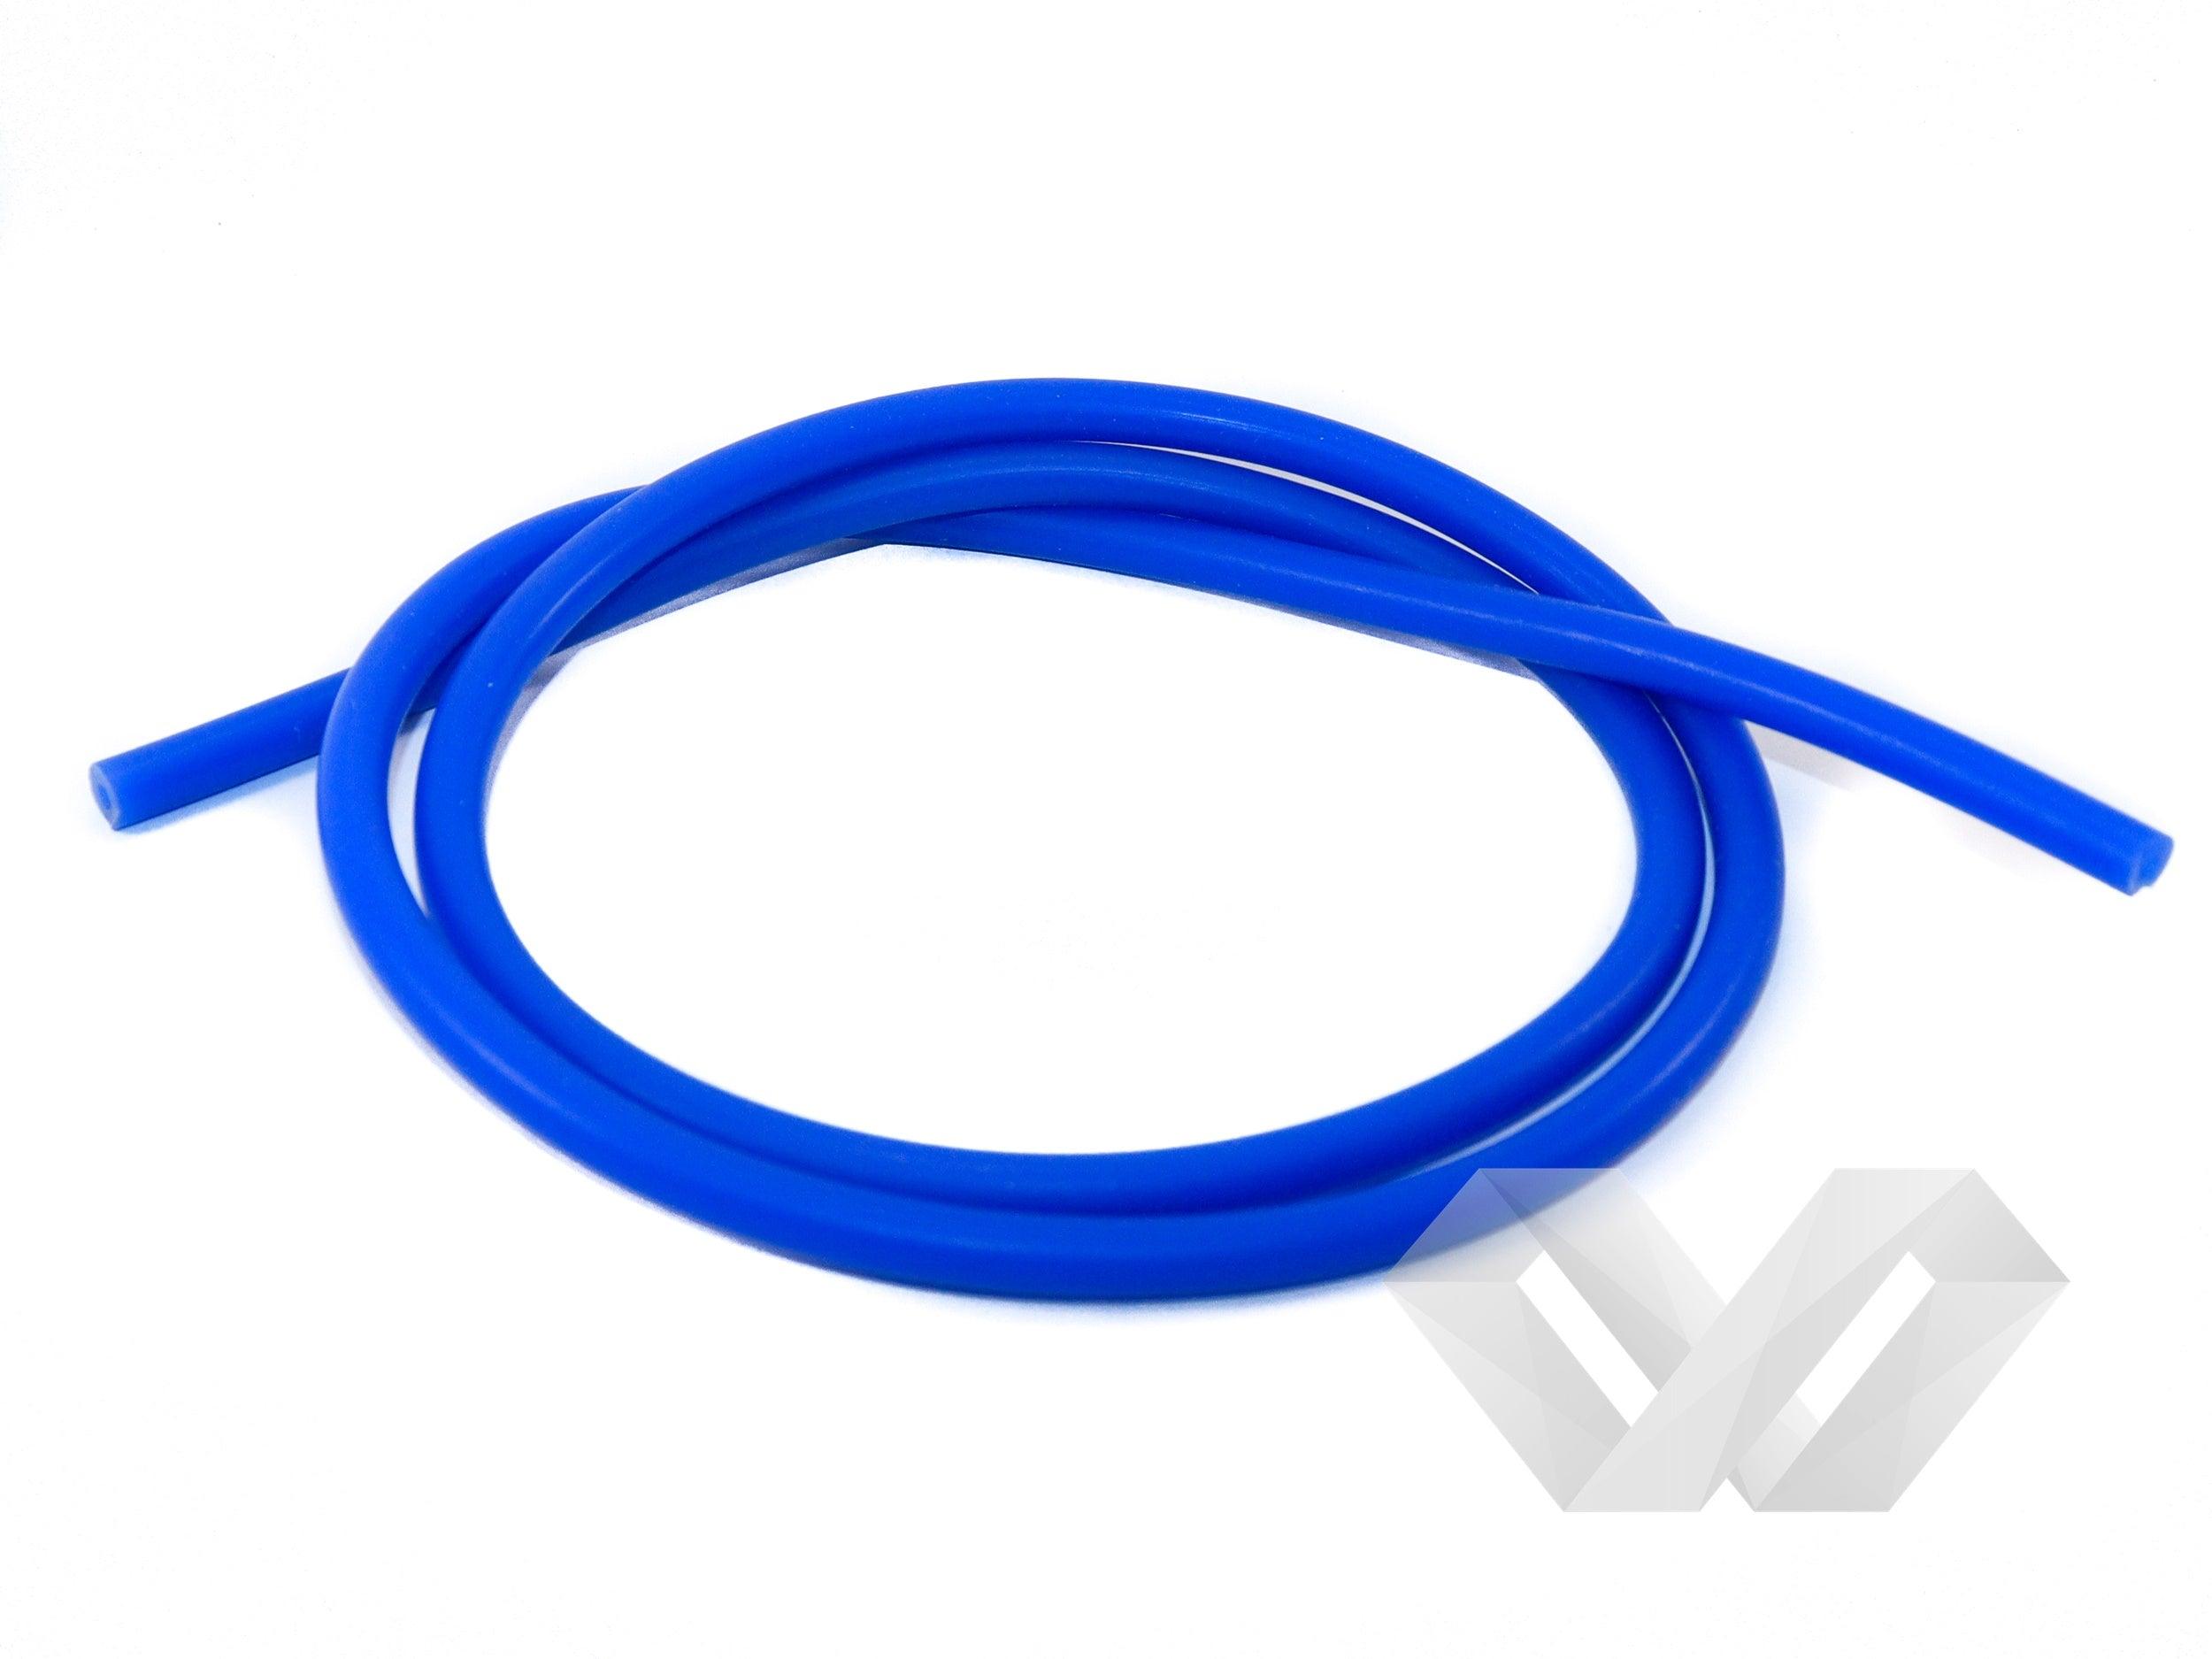 Furtun vacuum siliconic albastru 3mm